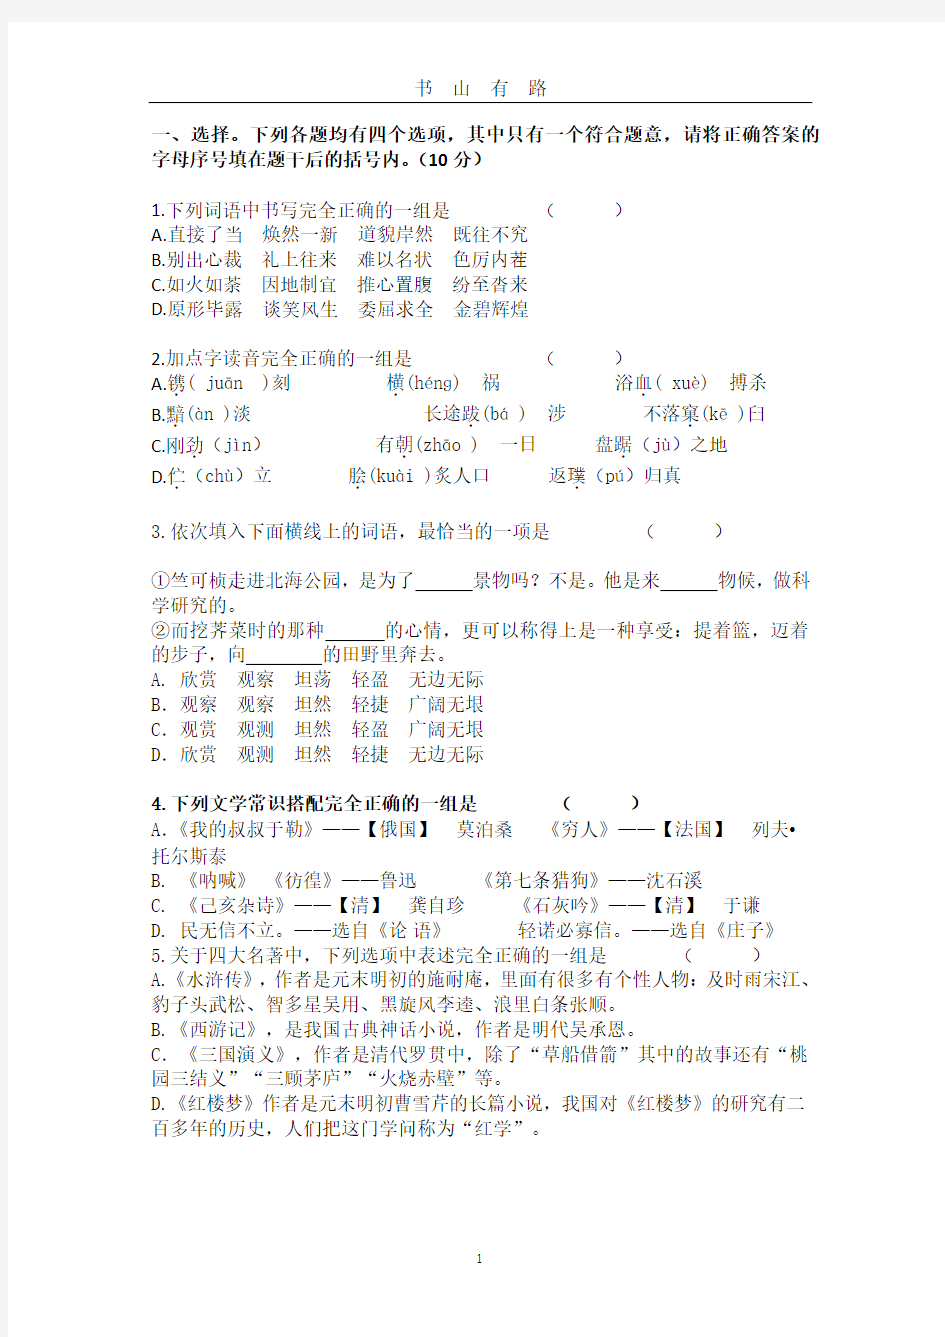 小升初模拟试题语文试卷(及答案)PDF.pdf